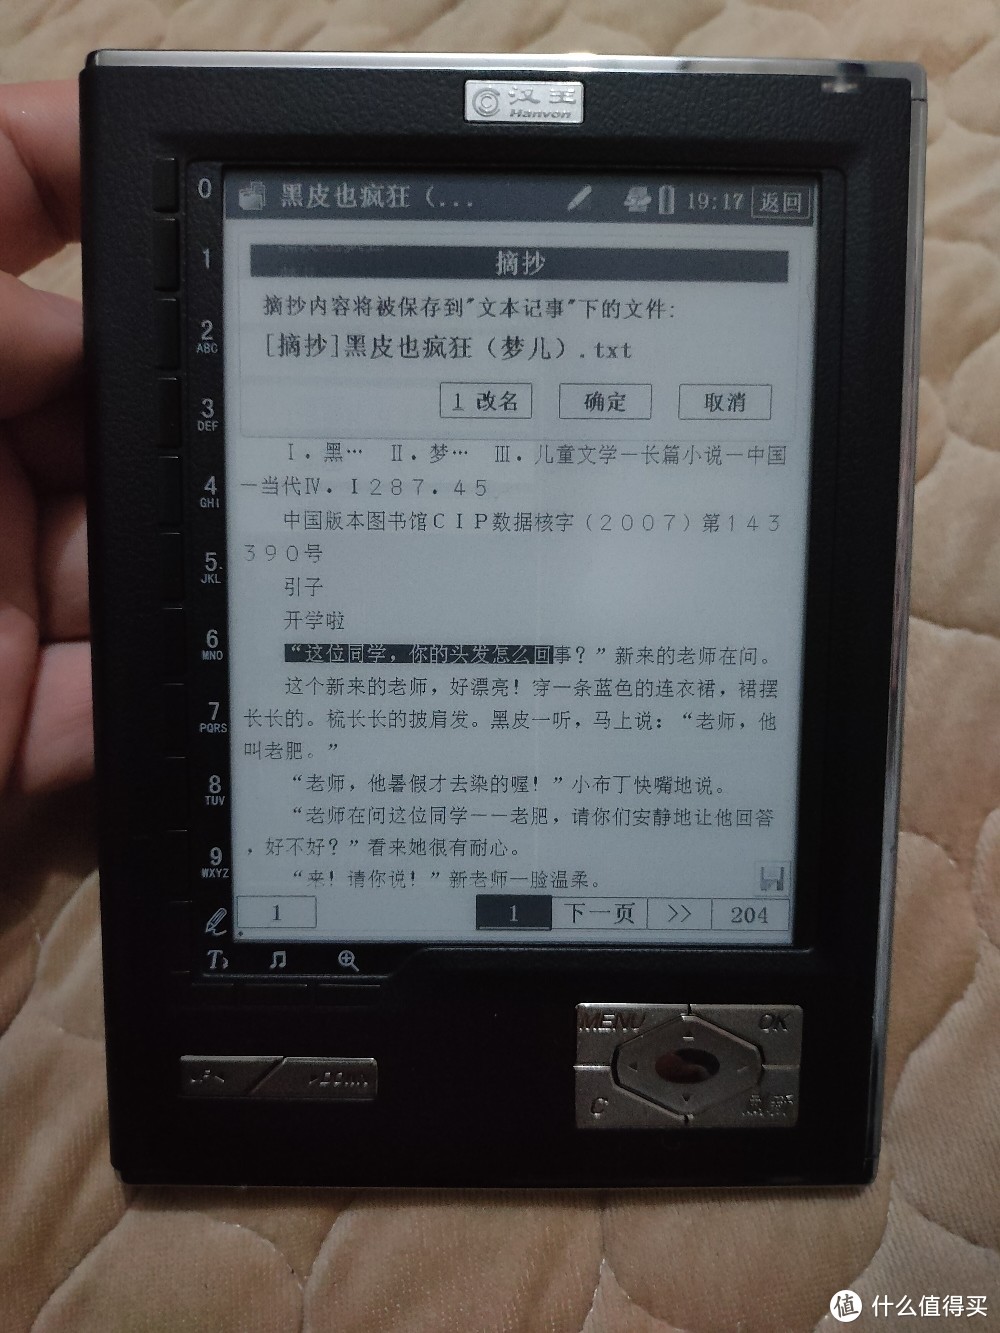 摘抄功能可摘录书中文字存储在TXT文档中，跟kindle类似。